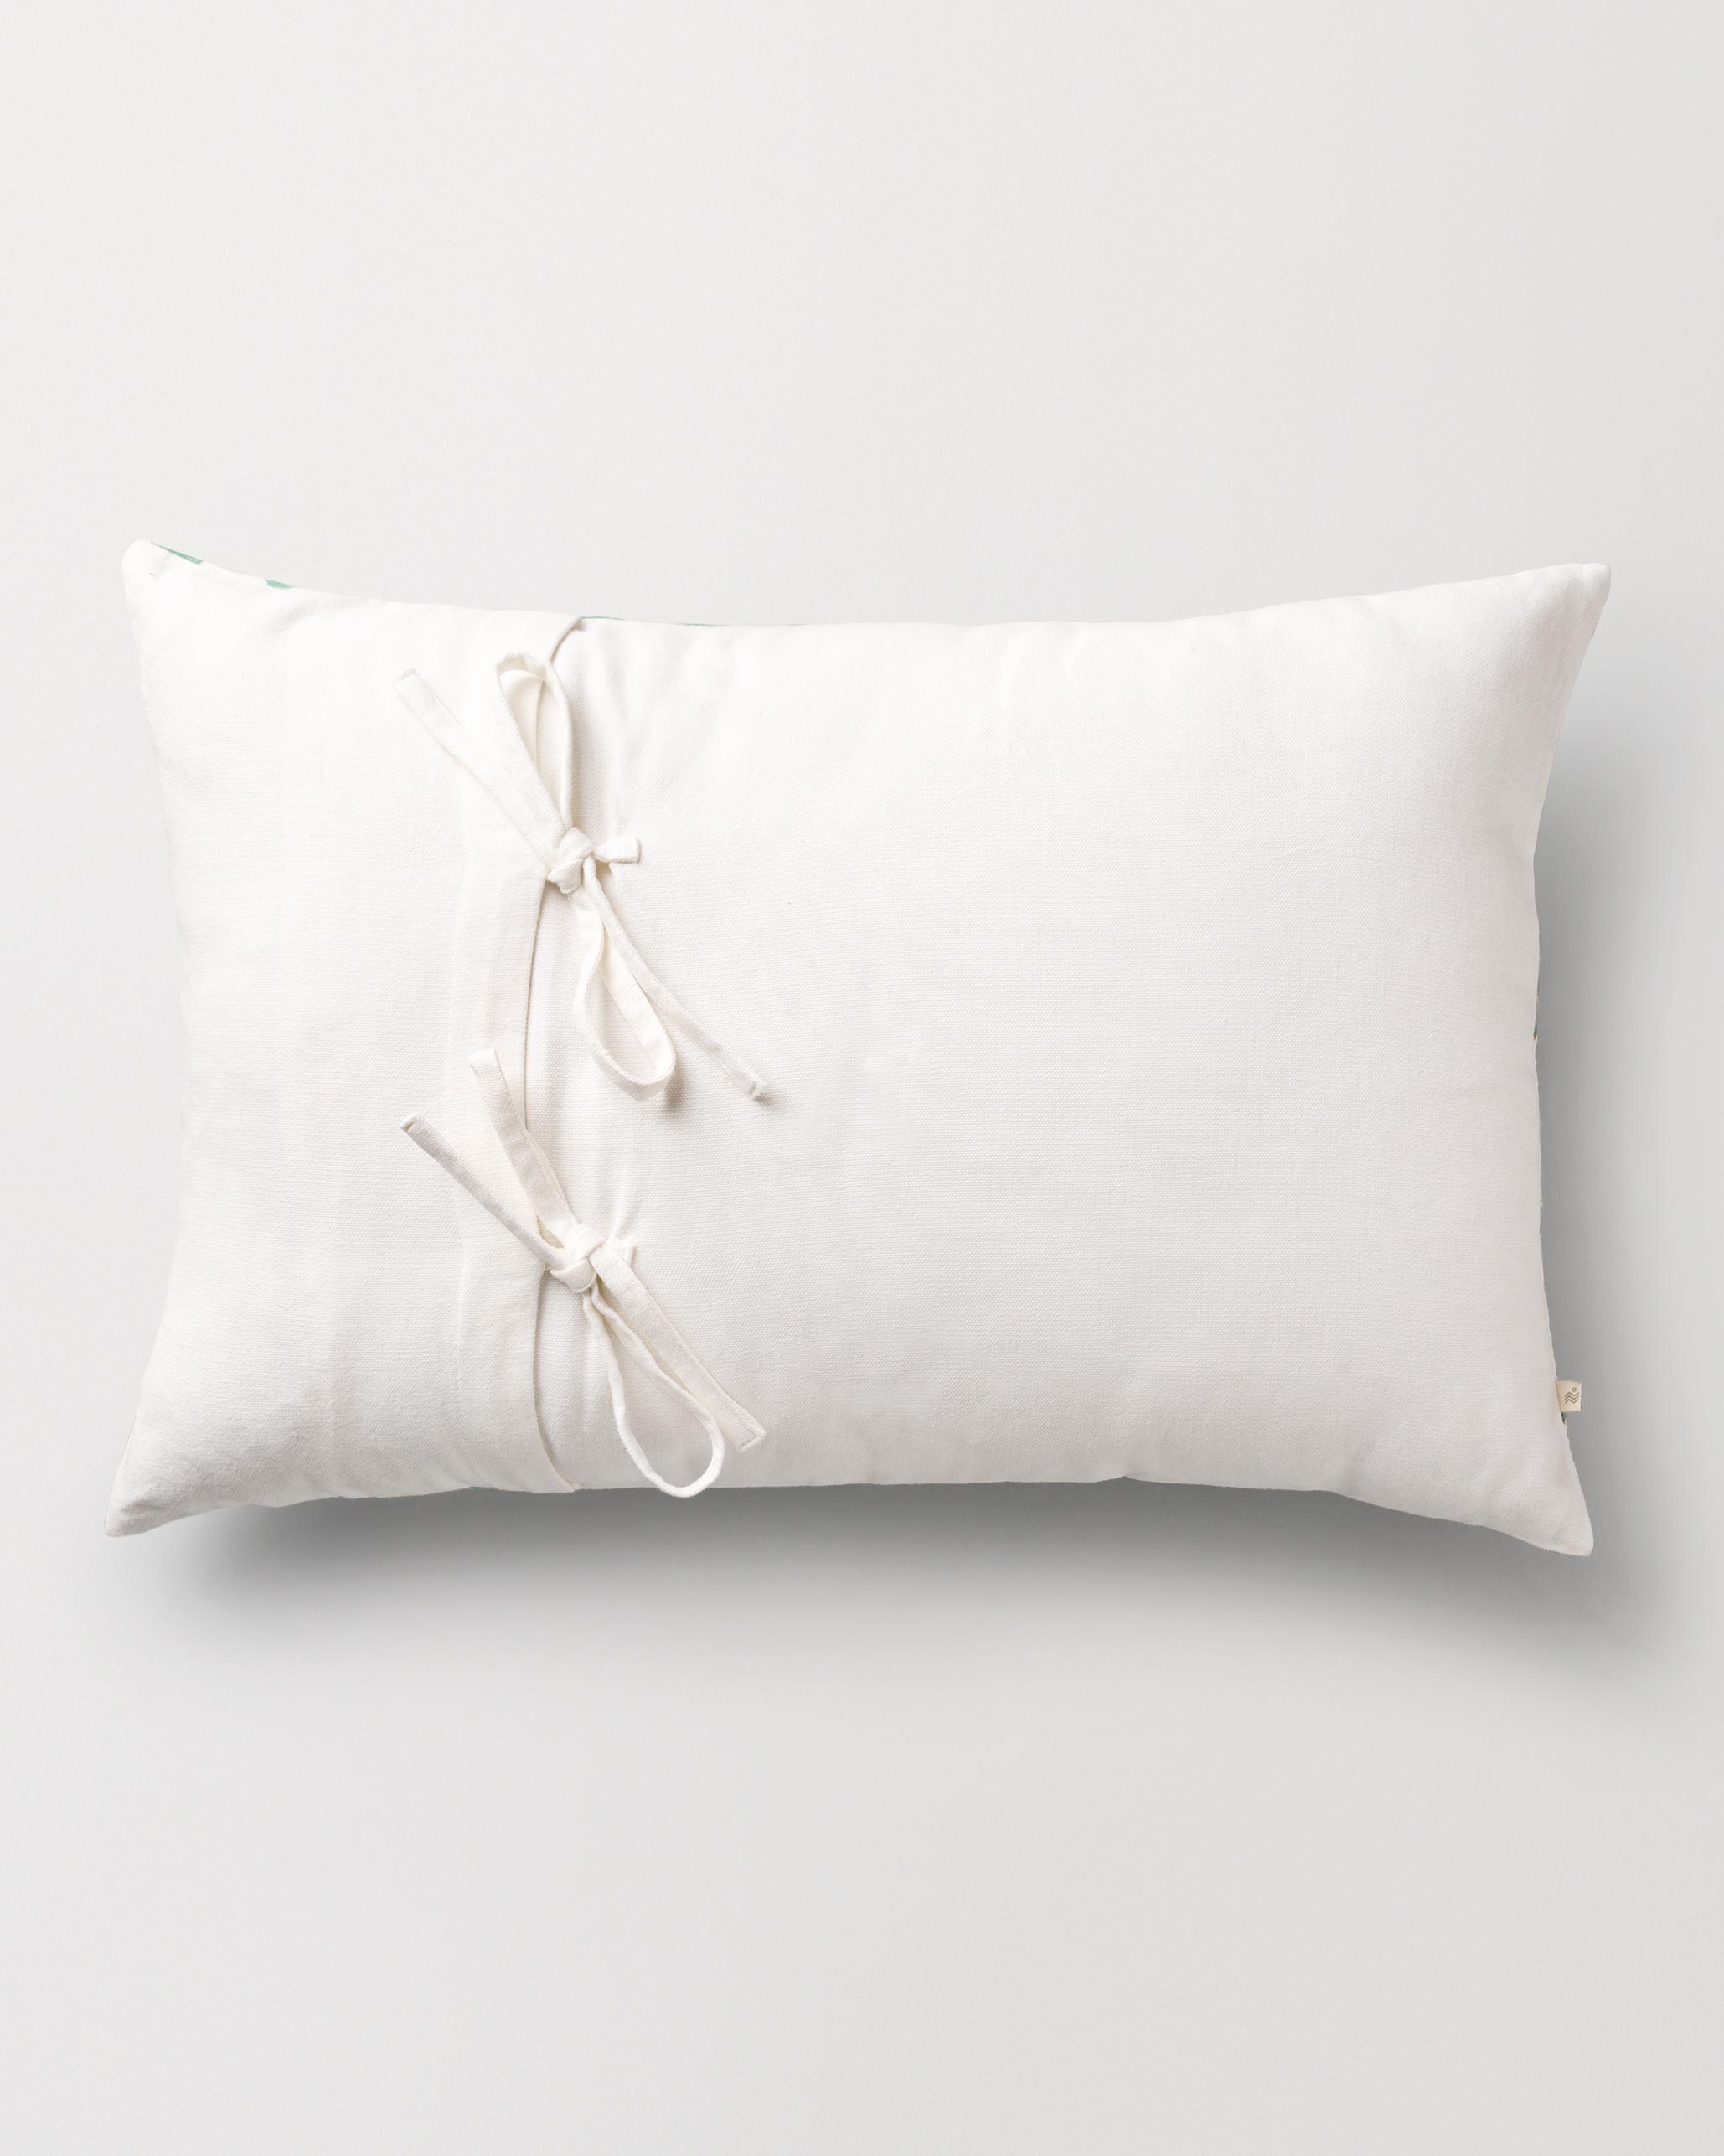 Hishigata Pillow Cover - Jade